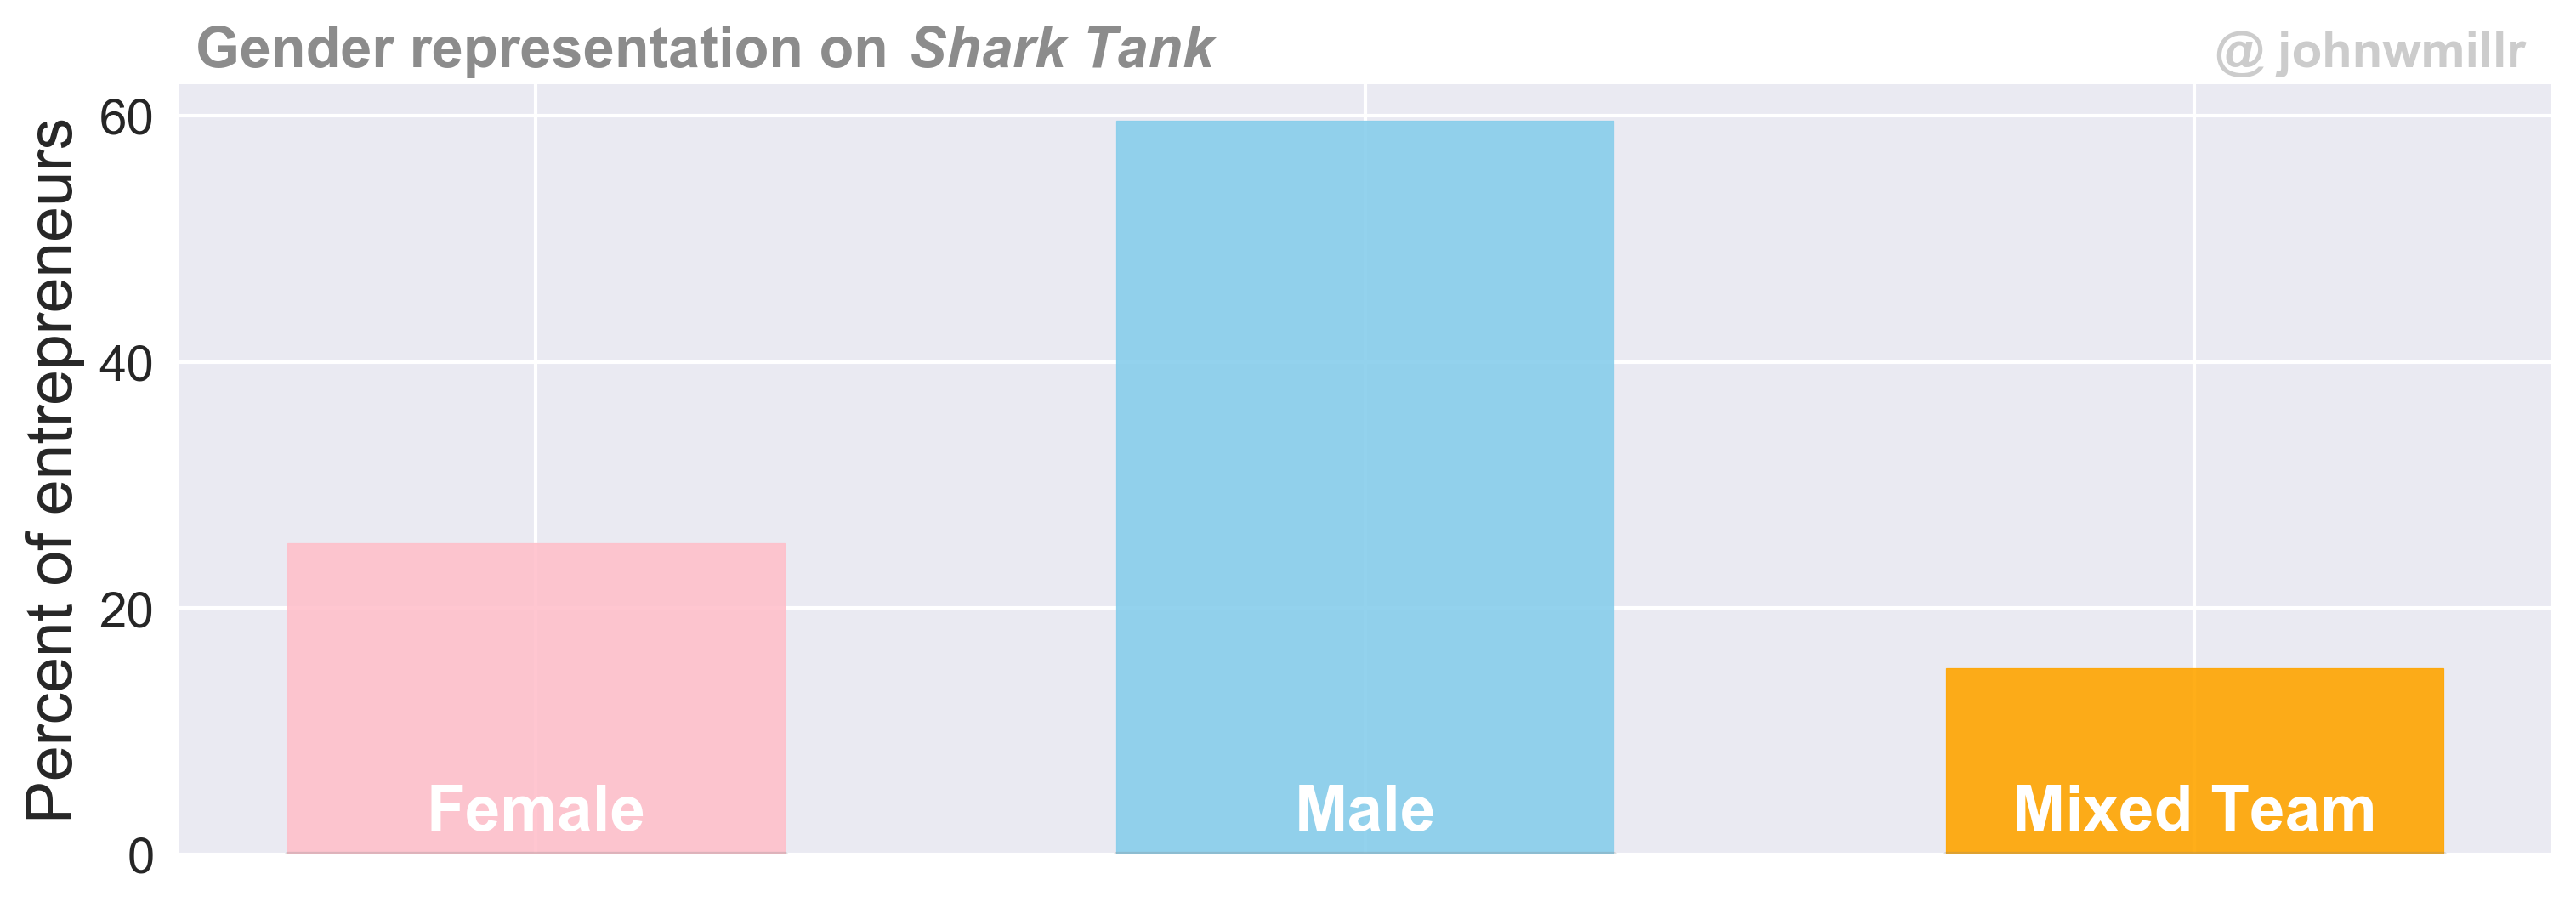 Gender representation on *SharkTank*